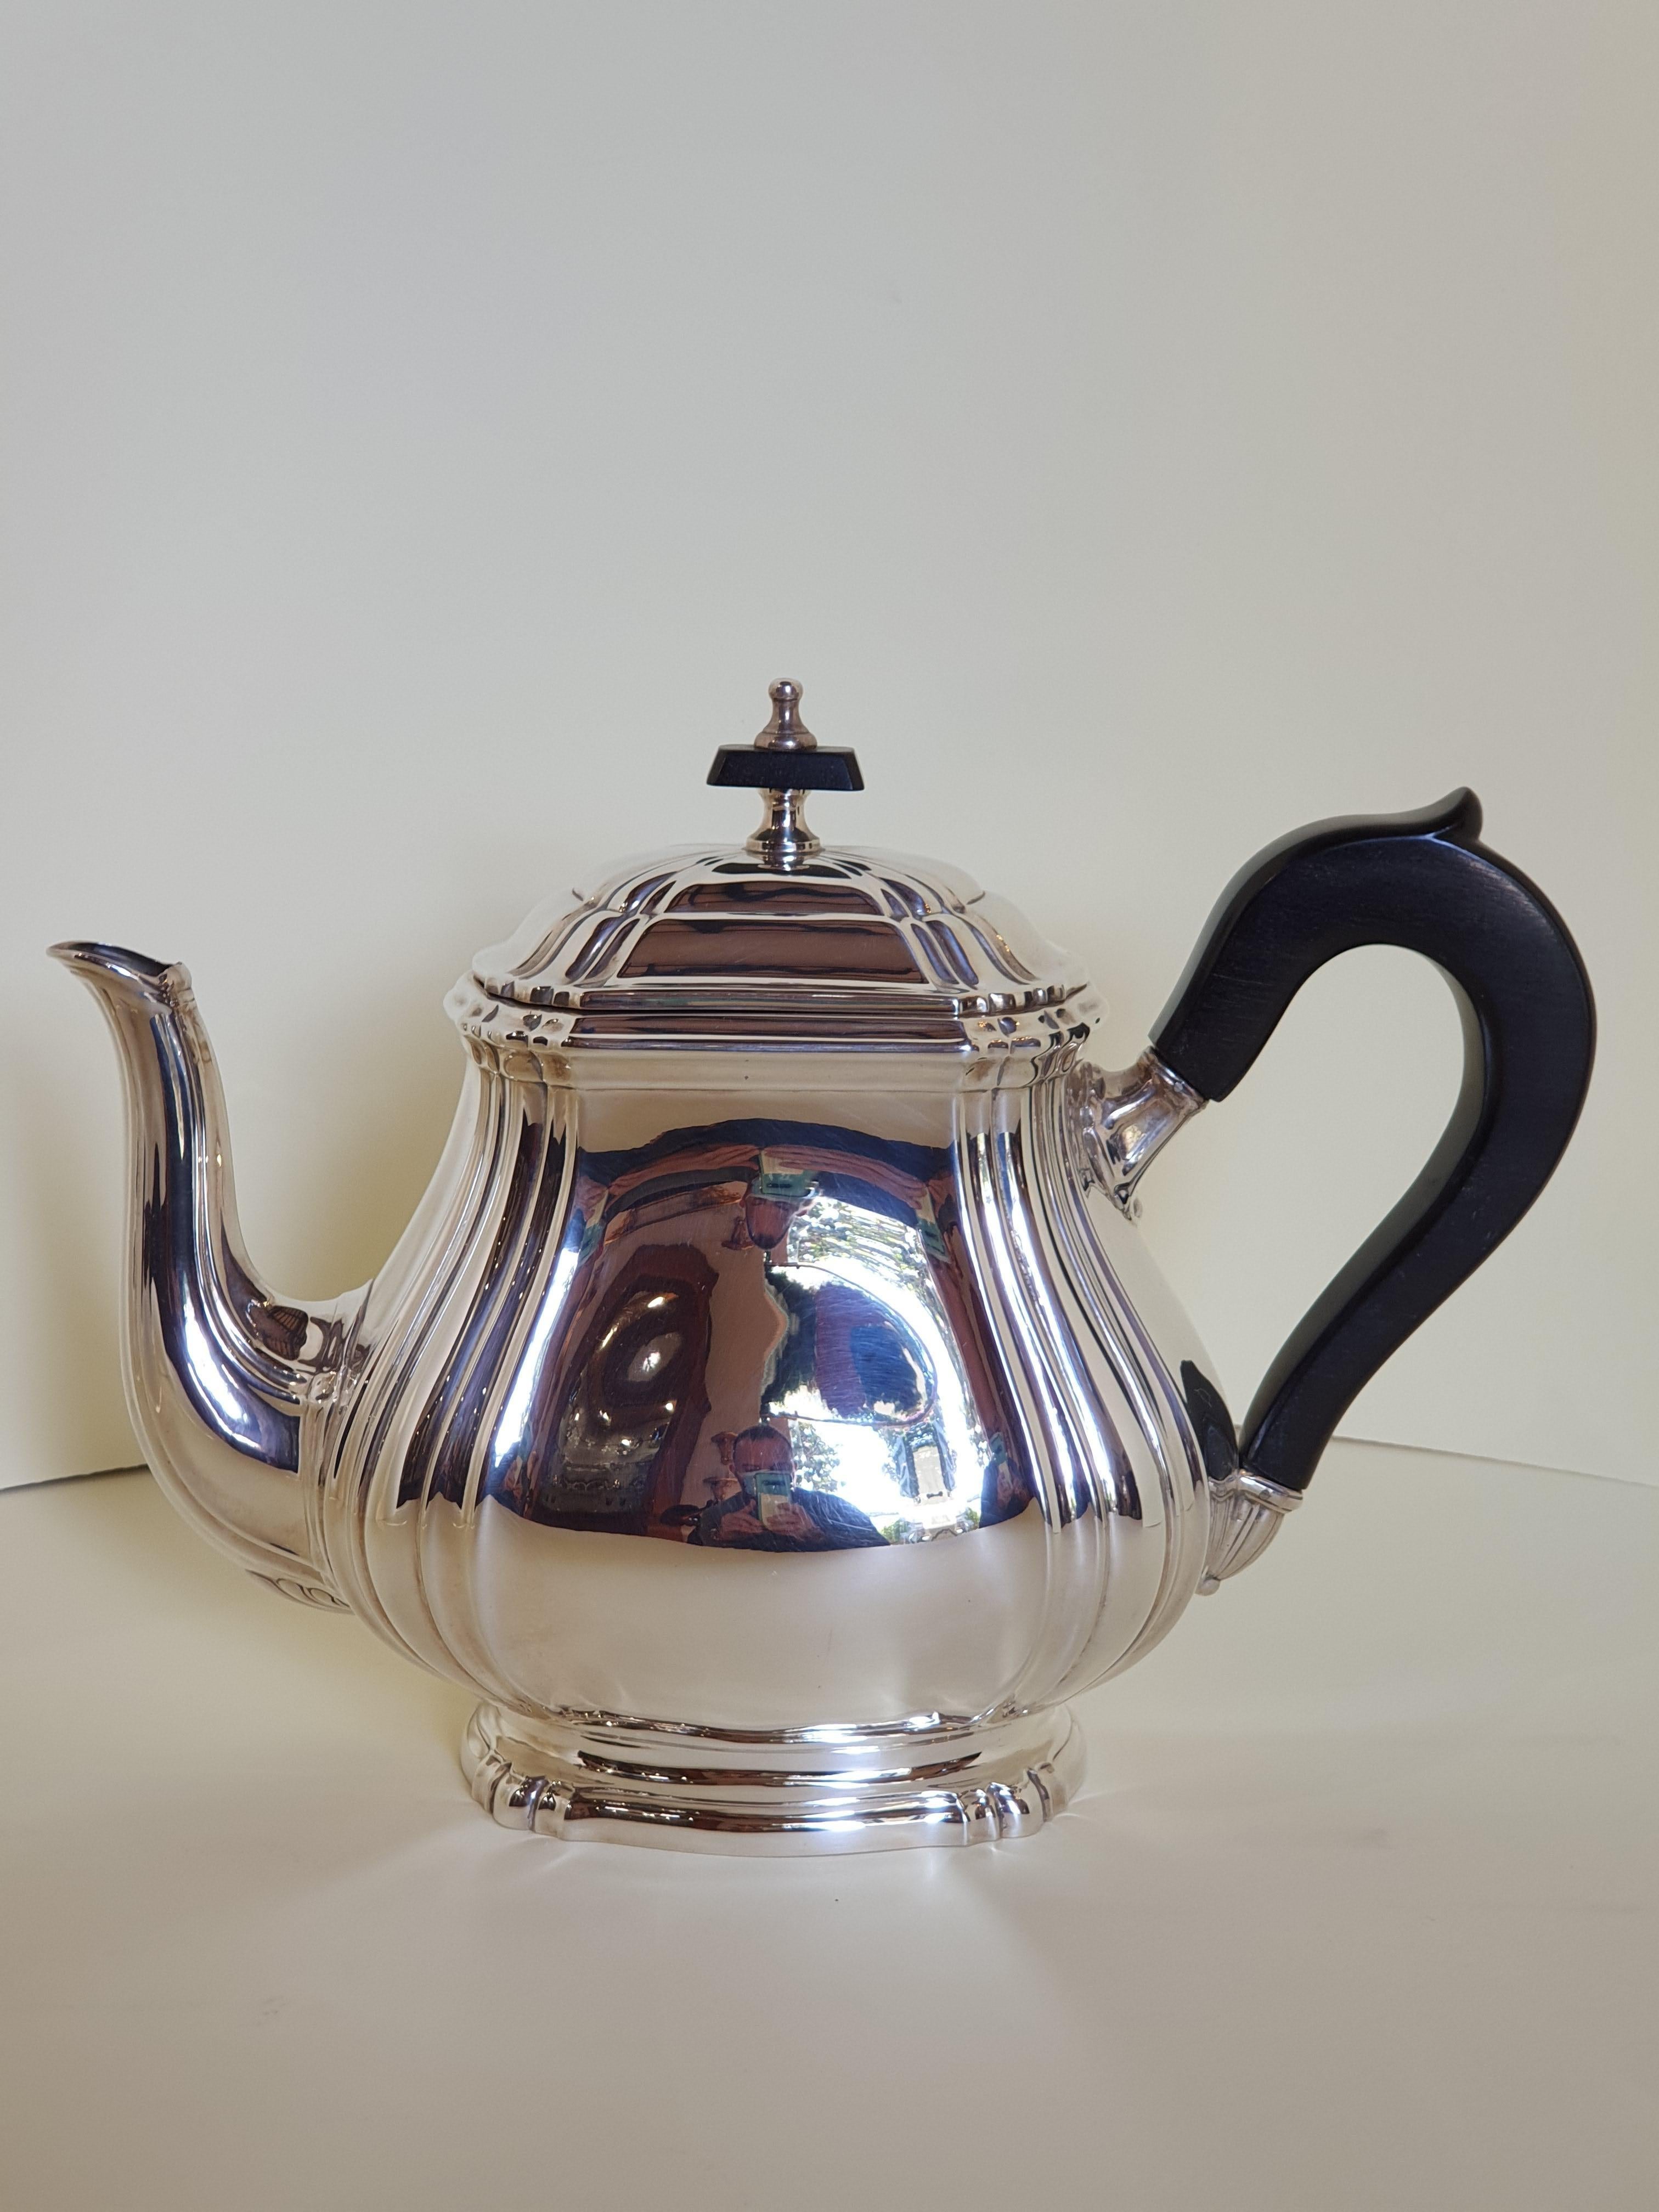 1881 rogers canada silver tea set